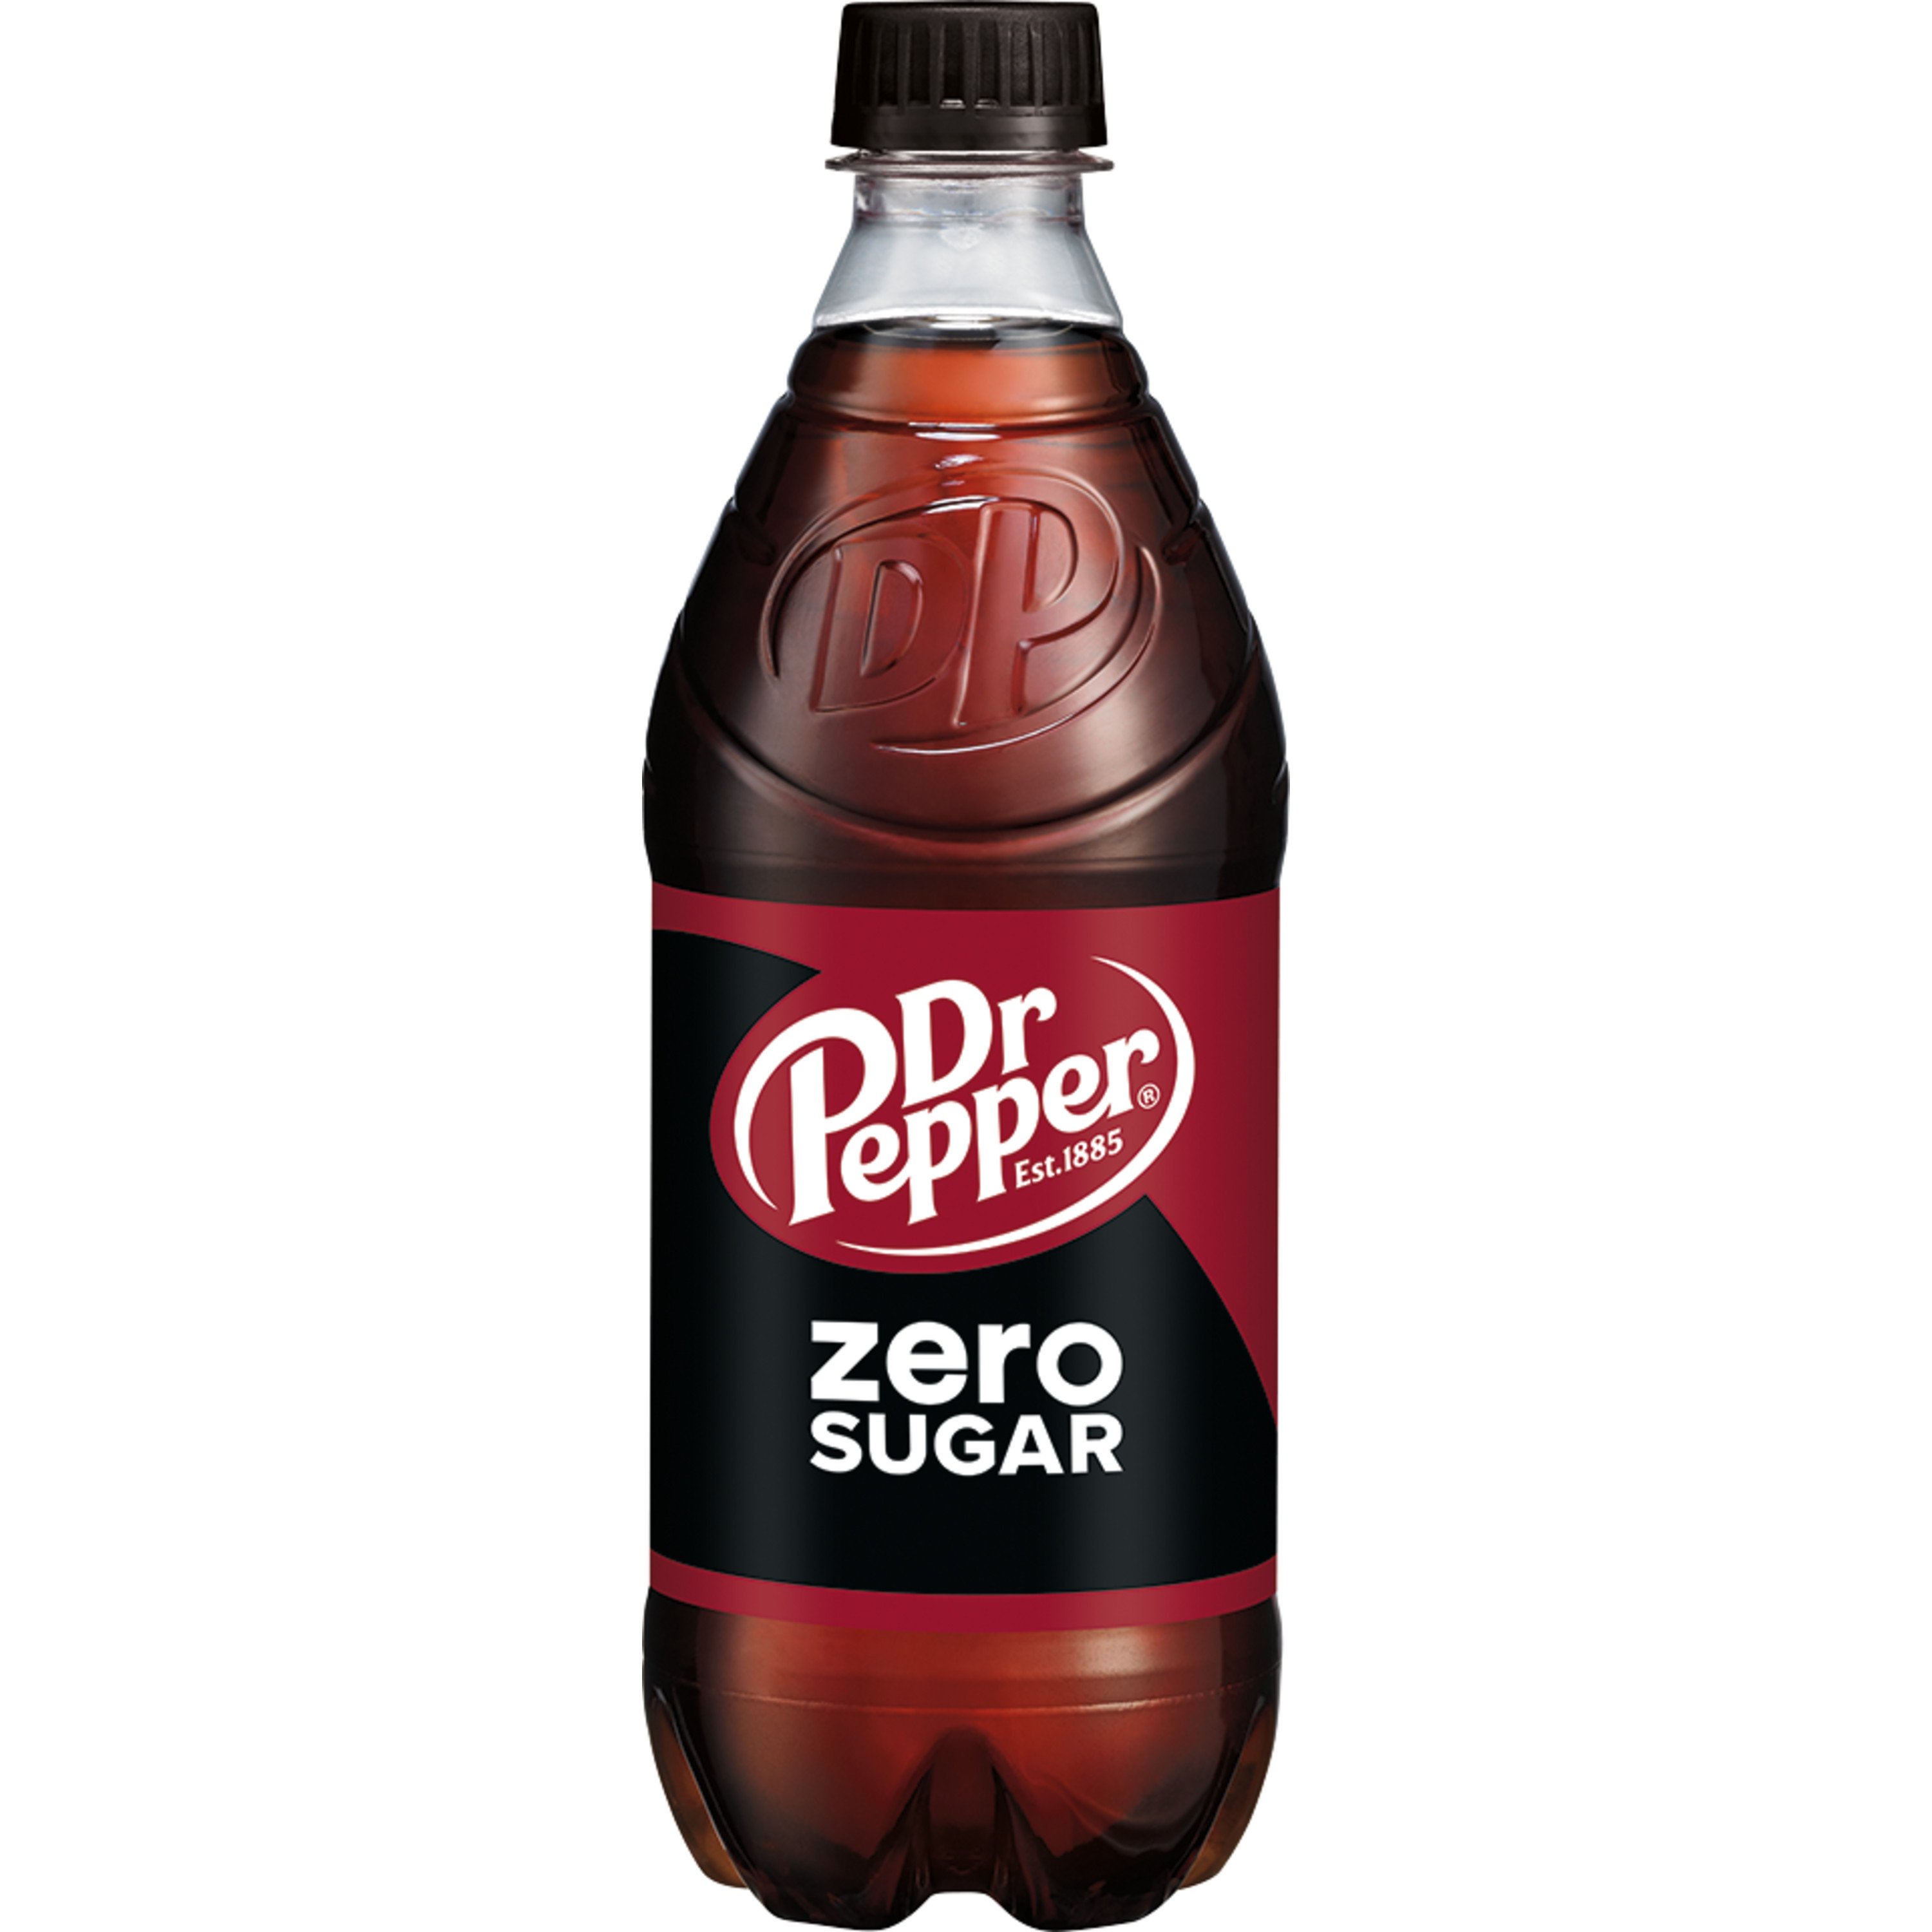 Dr Pepper Zero Sugar Soda - Shop Soda at H-E-B